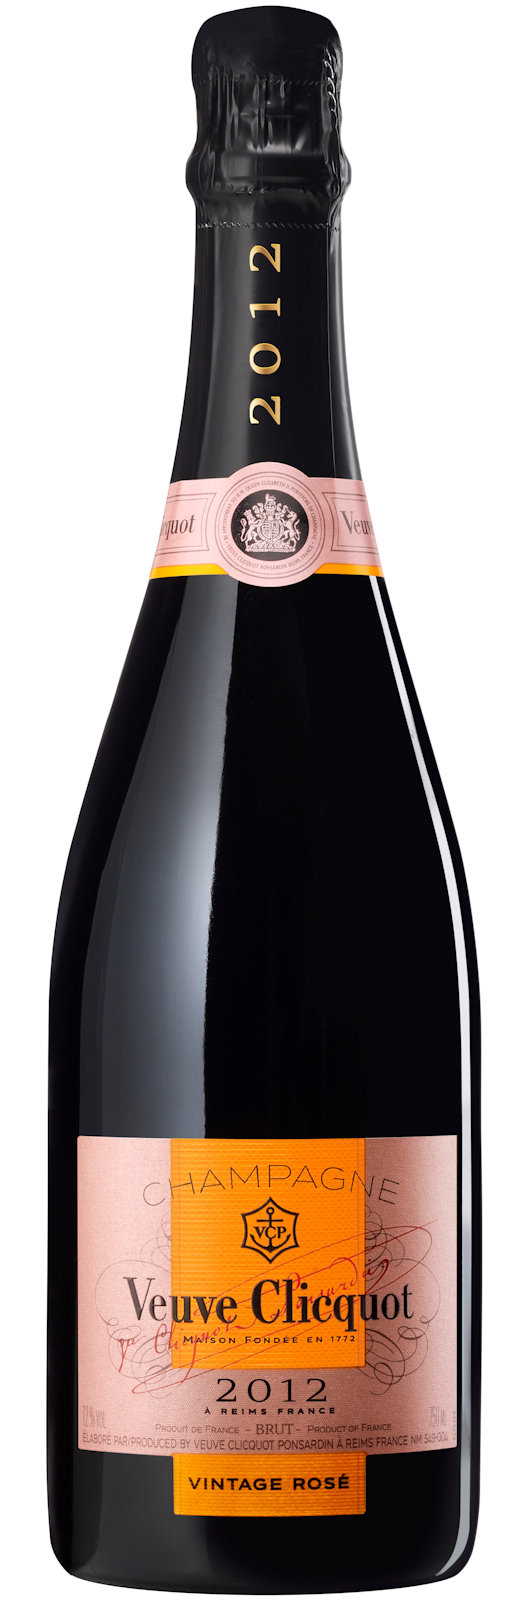 Veuve Clicquot Rosé 2012 Jahrgangs-Champagner Brut